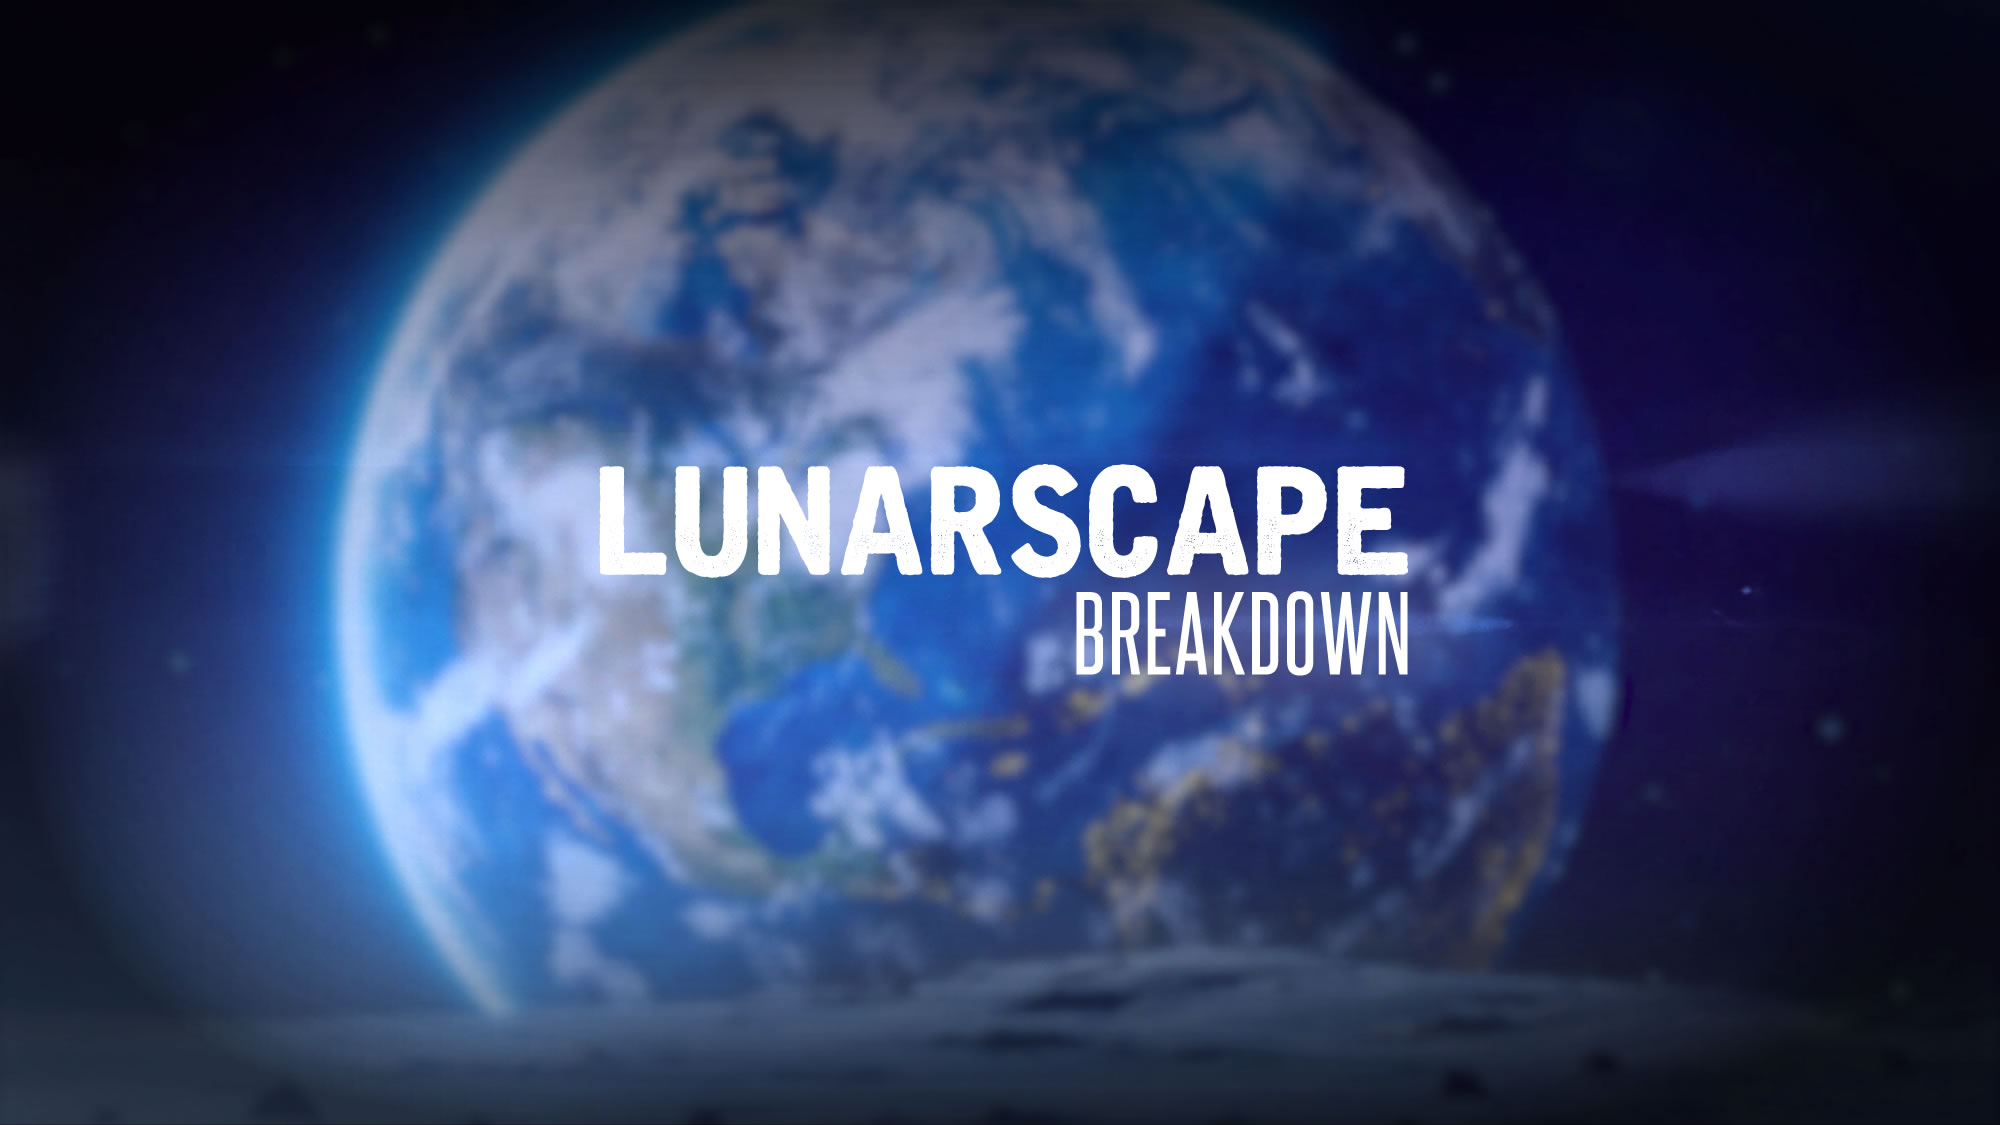 Lunarscape: Breakdown jetzt im VEX-Abenteuer verfügbar